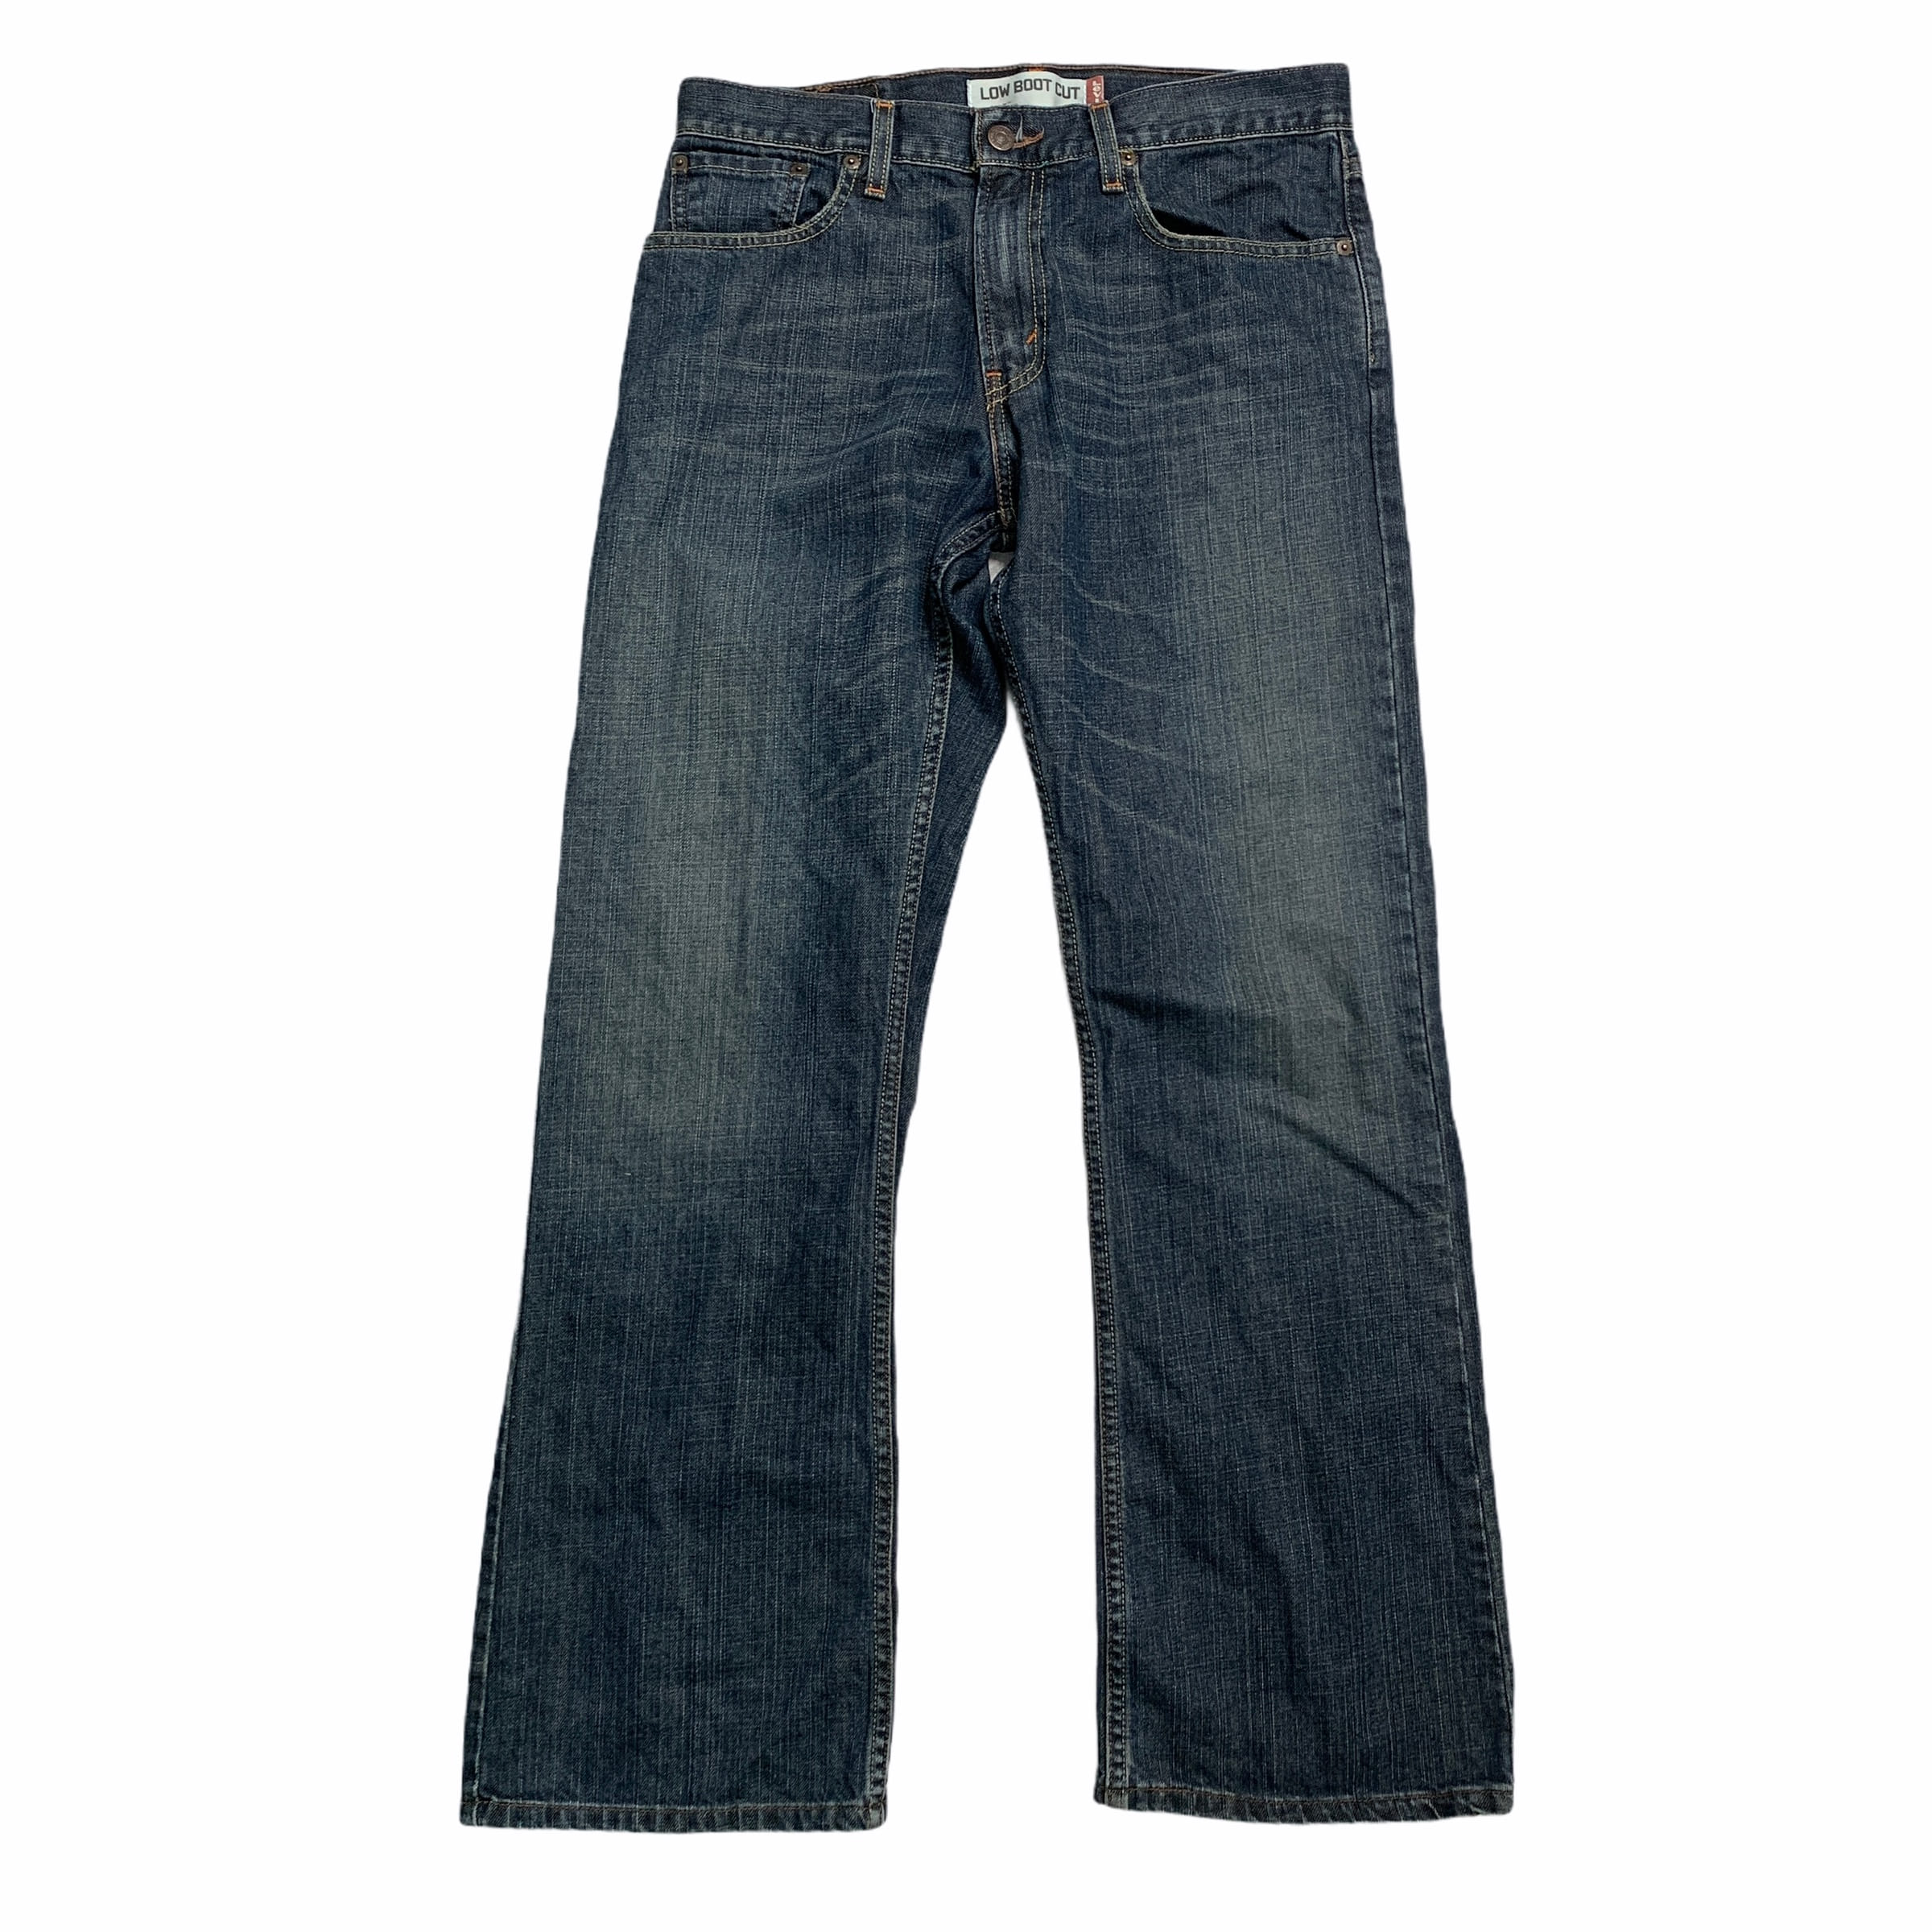 [Levis] (Vintage) 527 Denim pants - Size 32/30